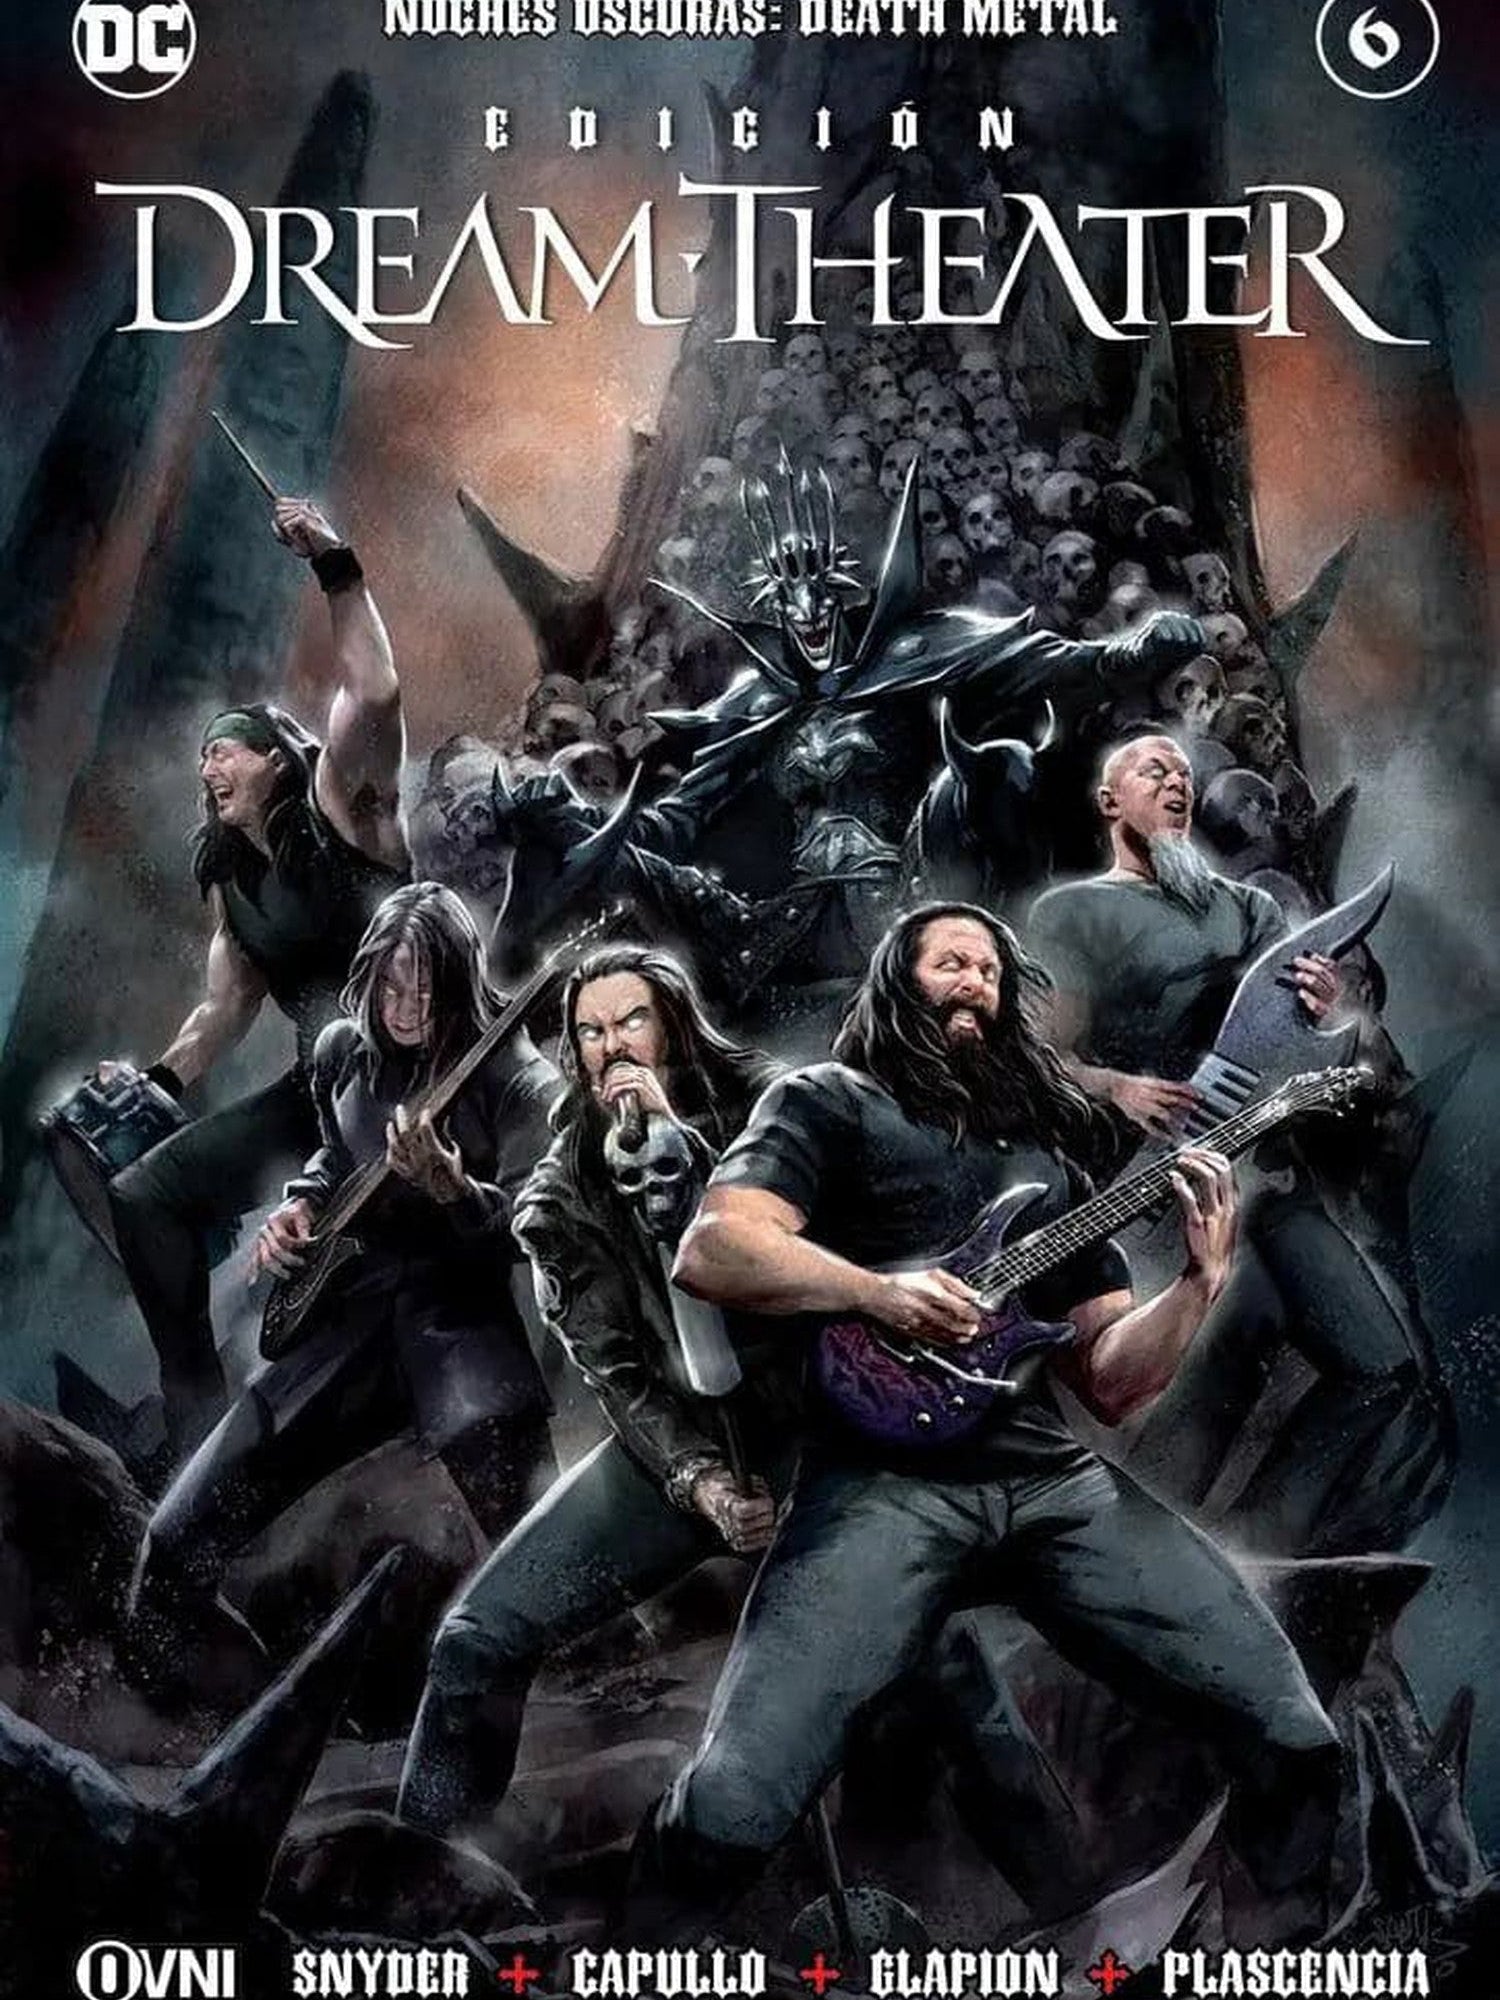 Noches Oscuras: Death Metal #6 Edición Dream Theater